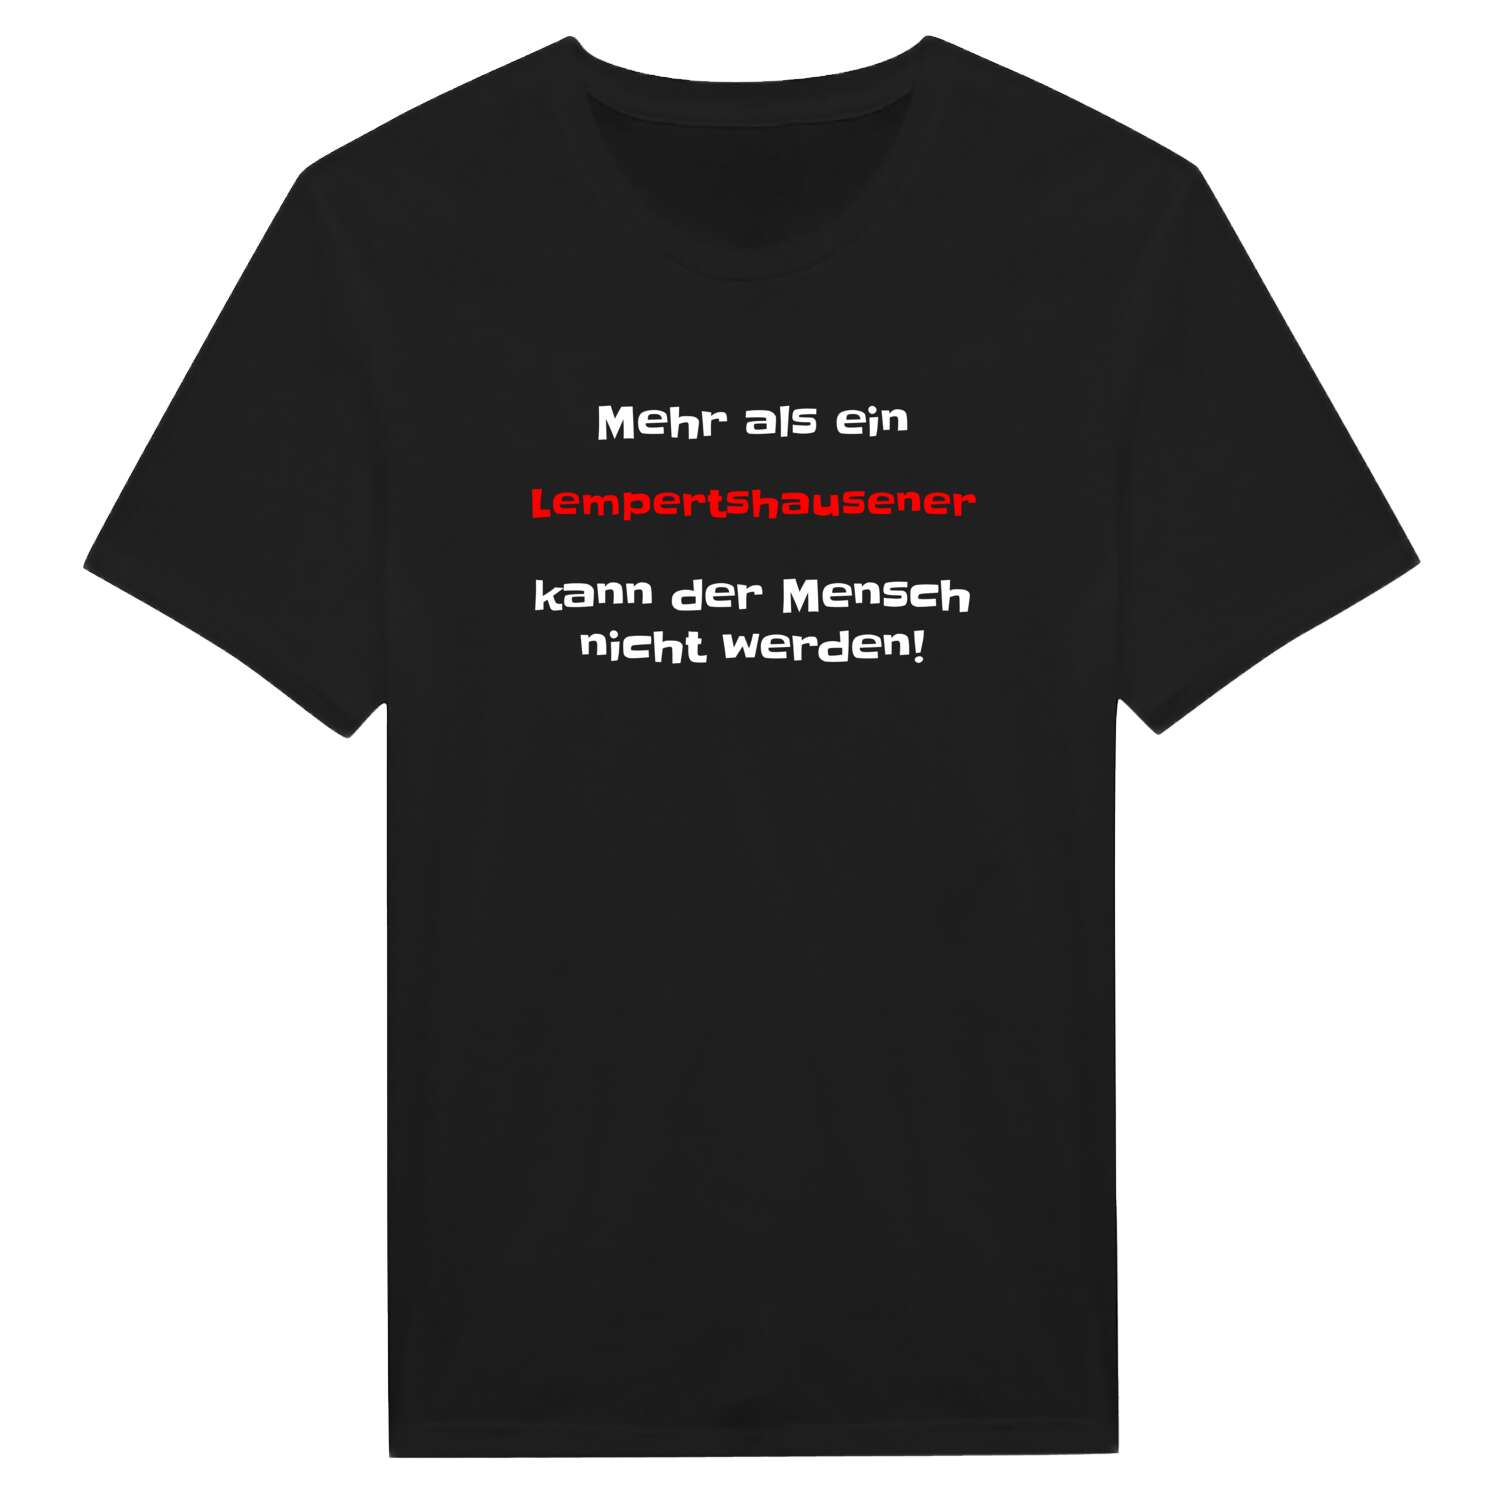 Lempertshausen T-Shirt »Mehr als ein«